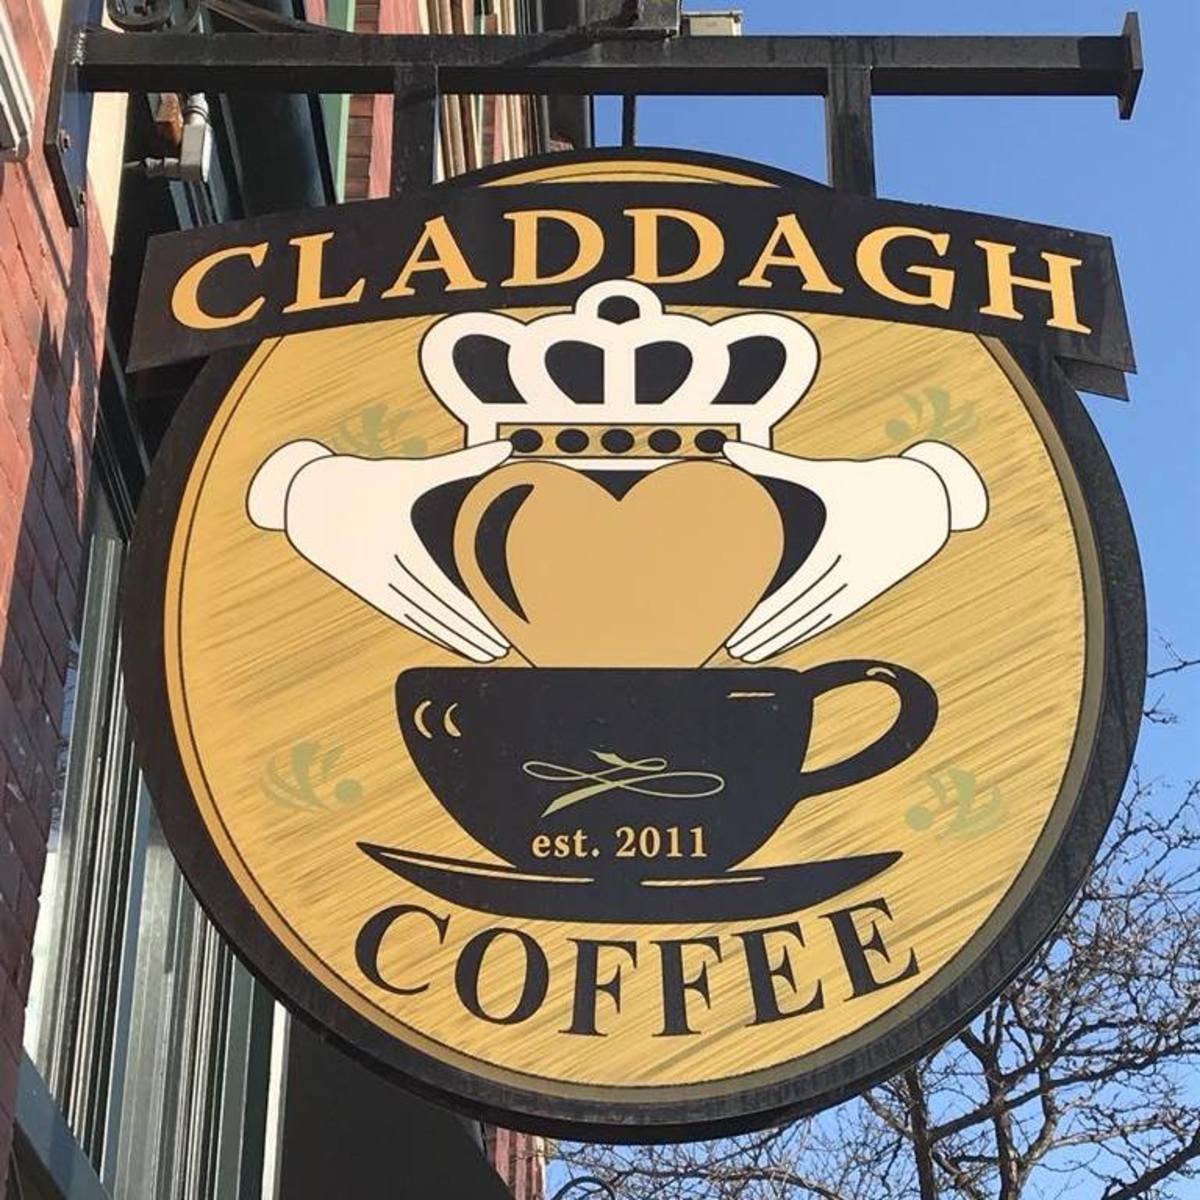 Image courtesy Claddagh Coffee